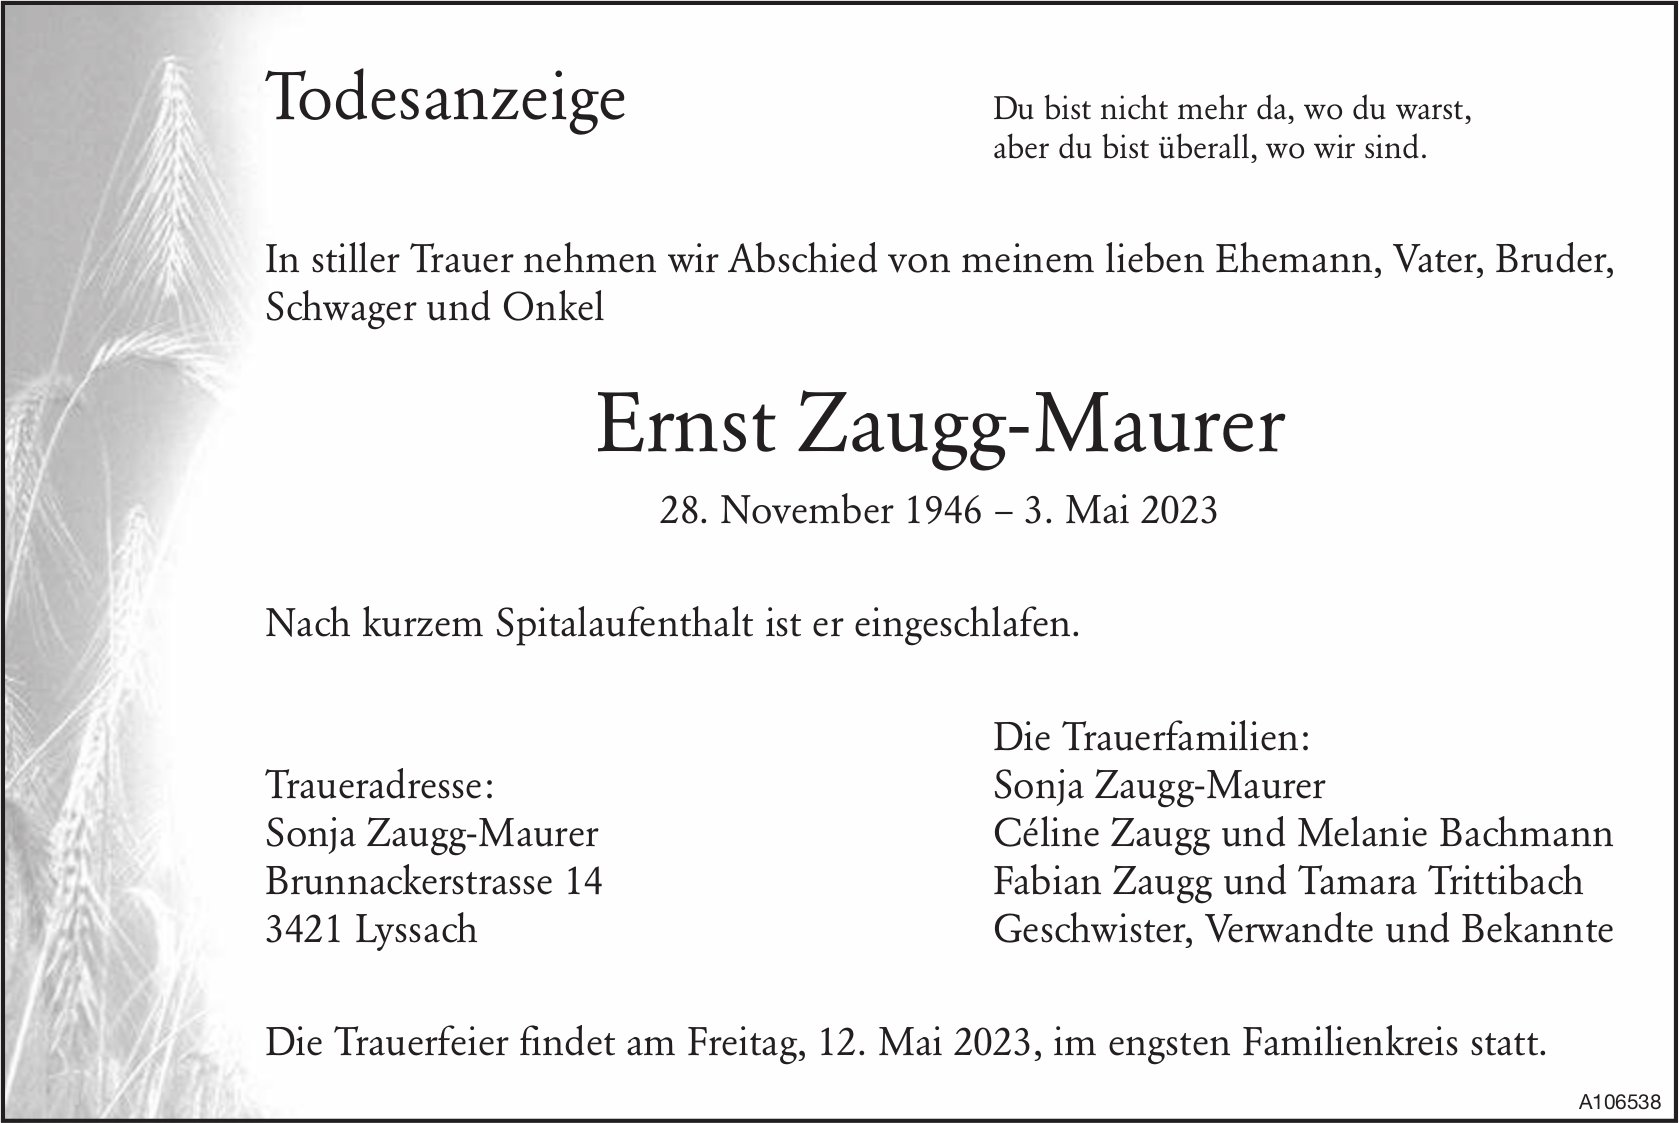 Ernst Zaugg-Maurer, Mai 2023 / TA